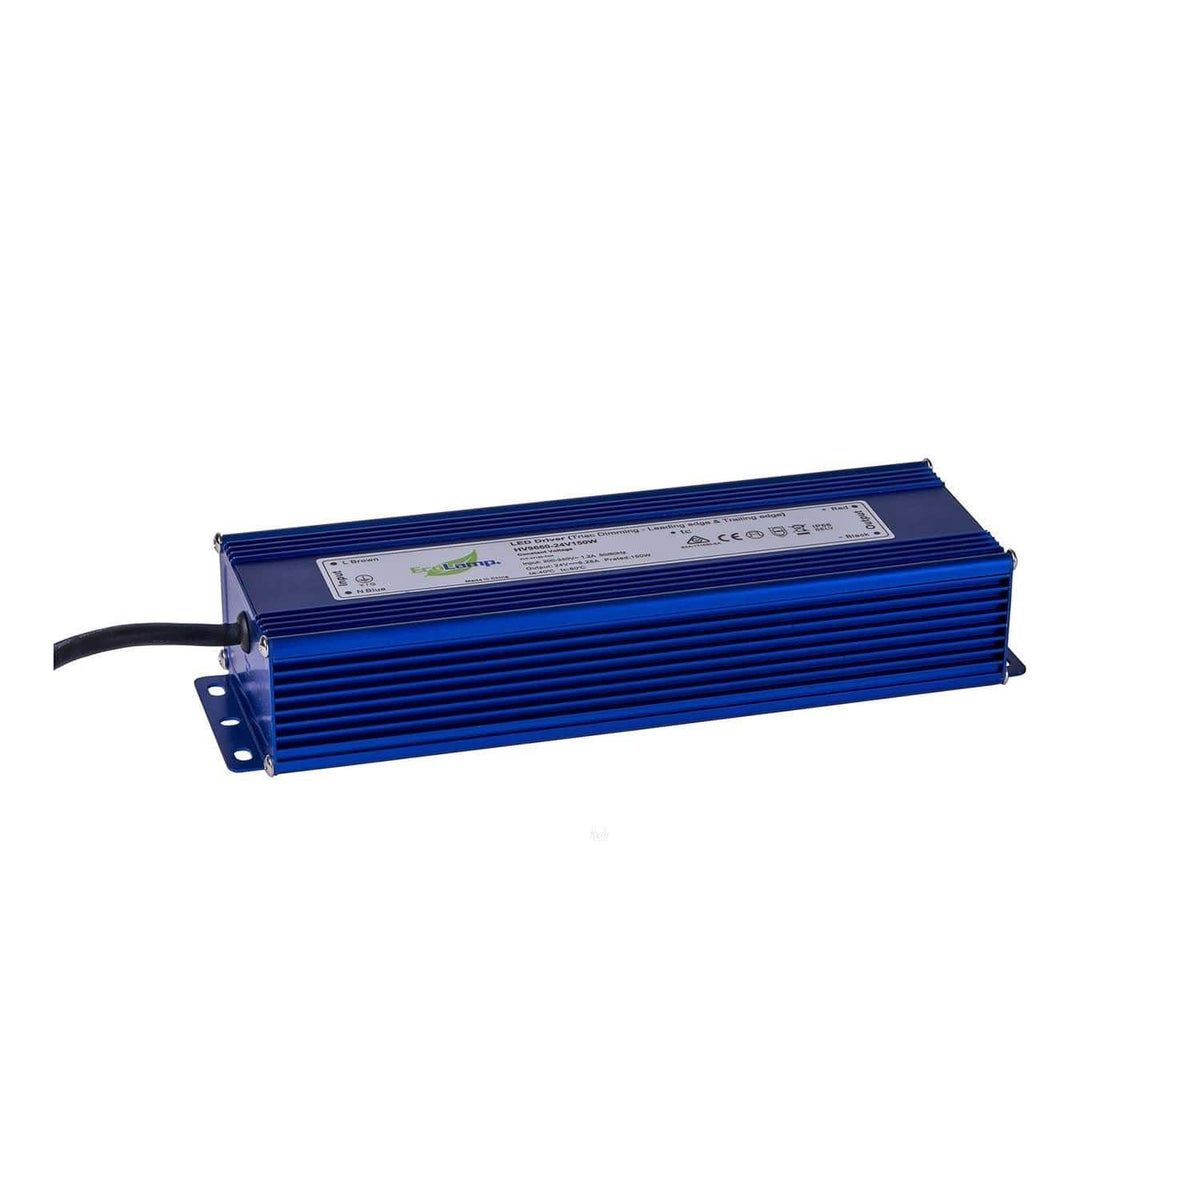 Havit Lighting LED Drivers HV9660-12V150W / Blue HV9660-150W - 12V Or 24V Weatherproof Dimmable LED Driver HV9660-12V150W